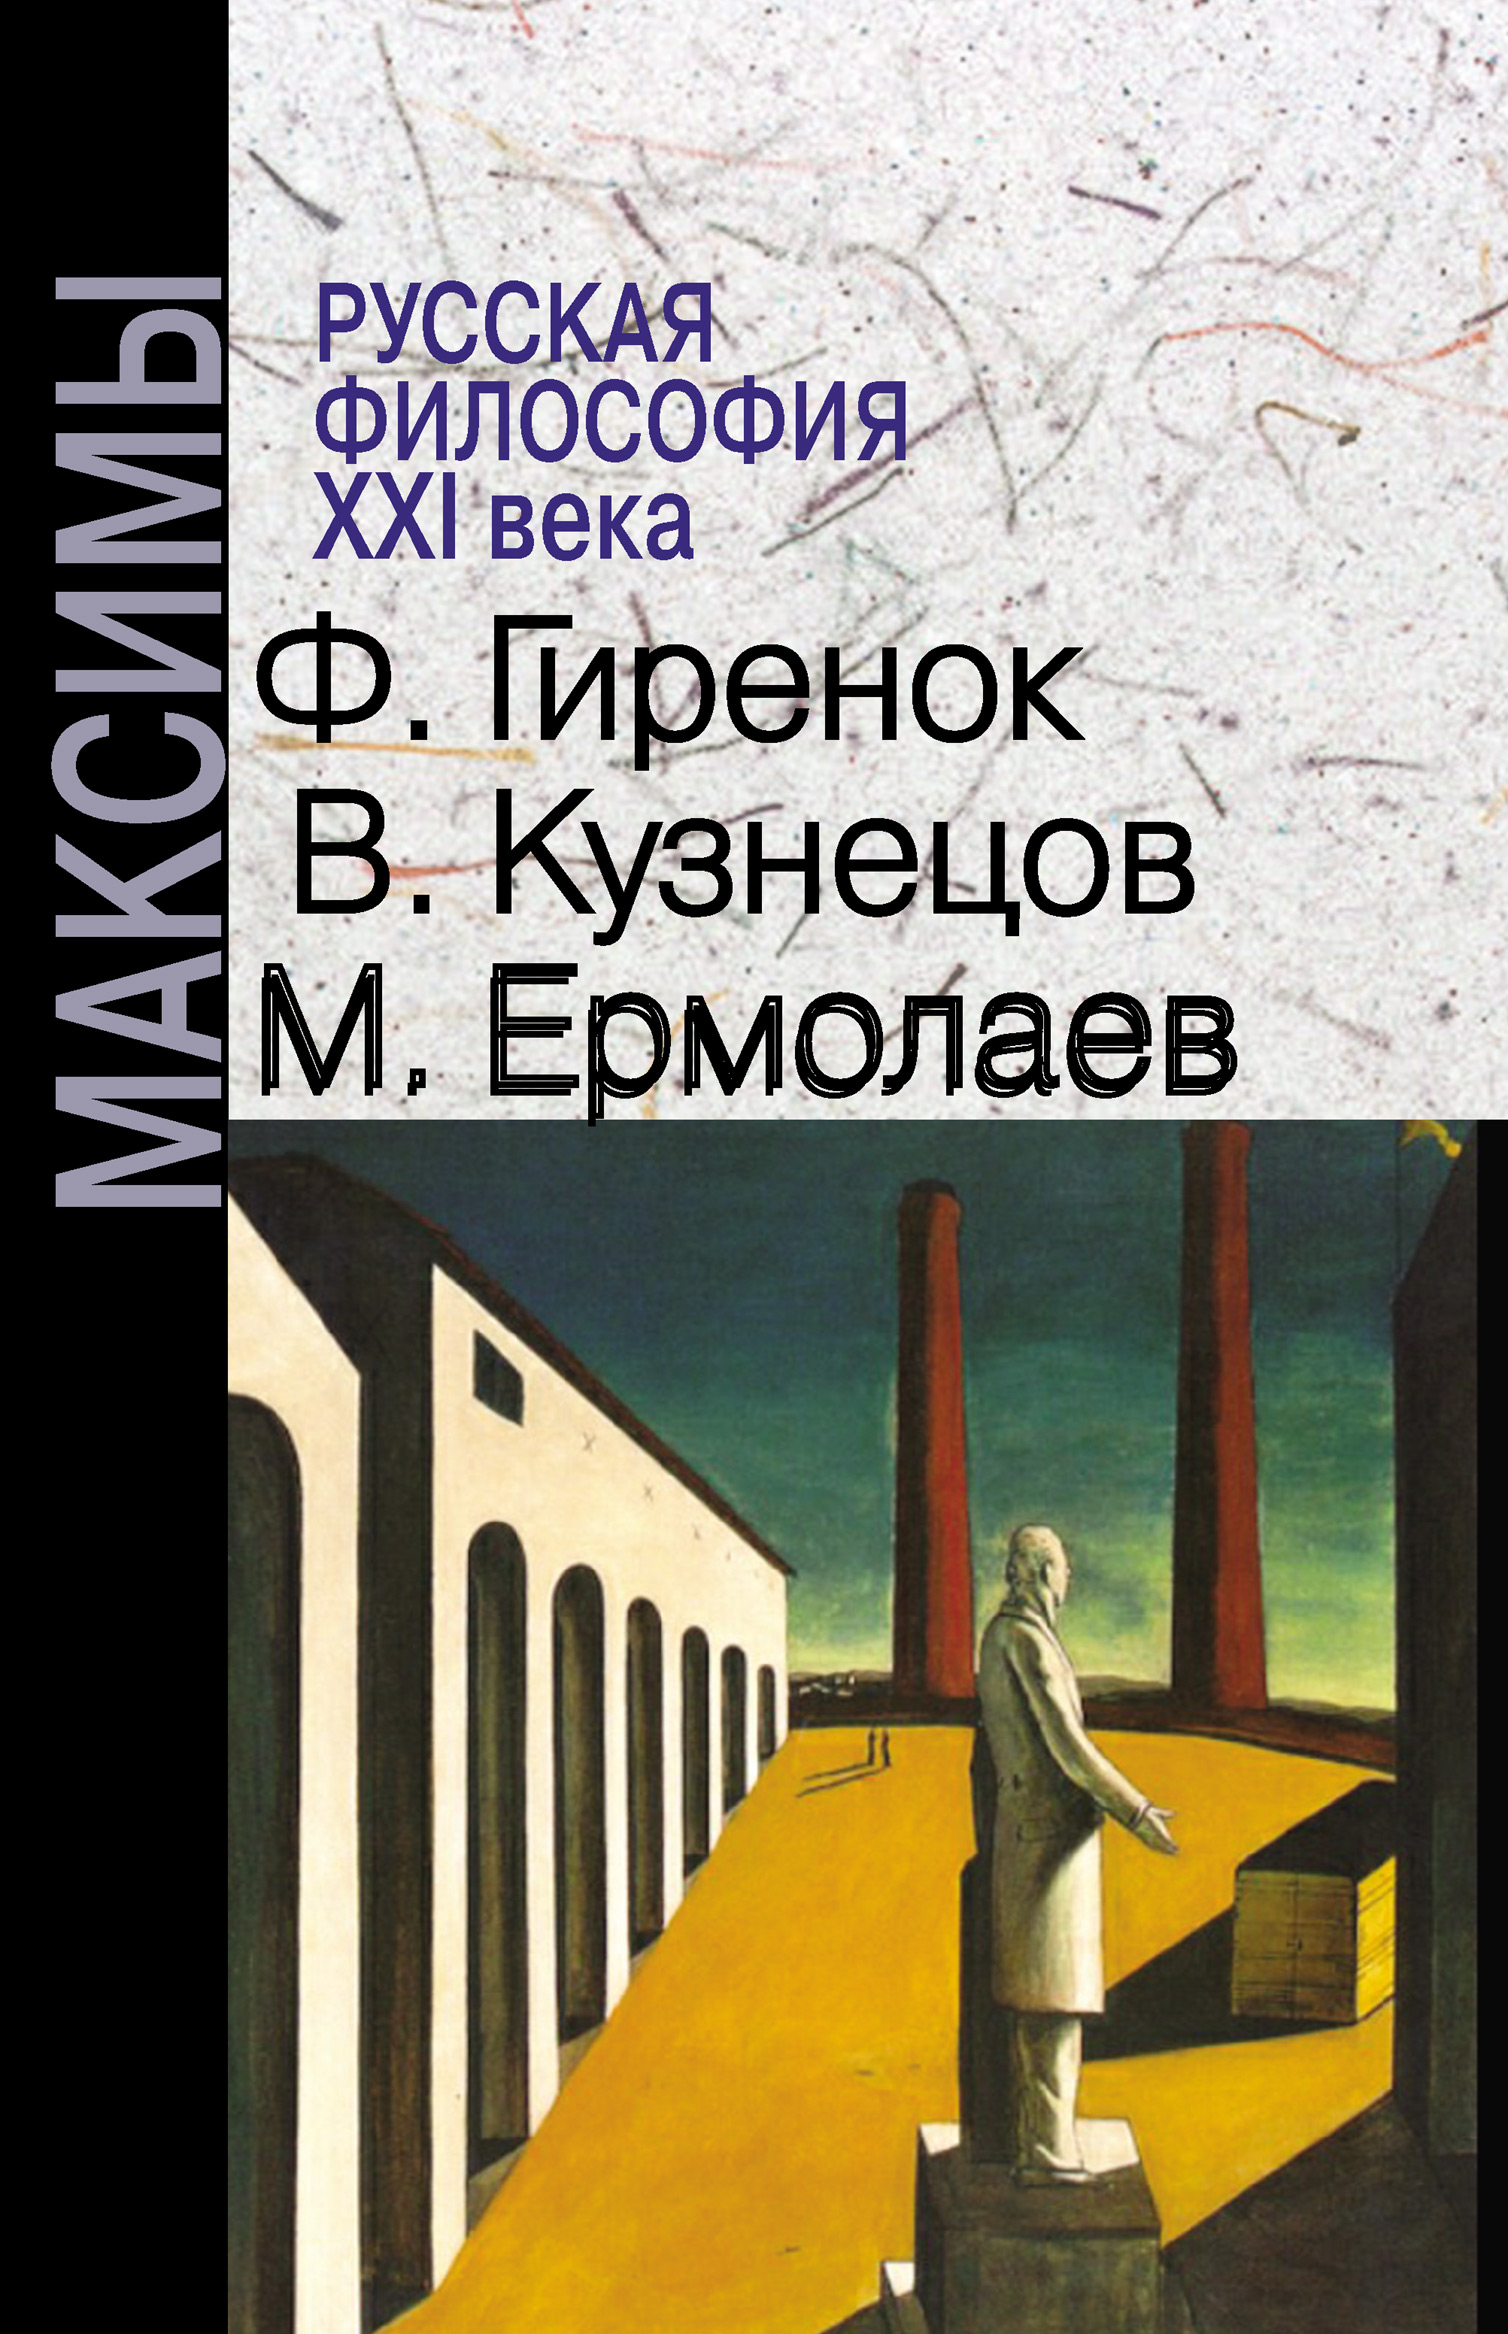 Русская философия XXI века. Максимы